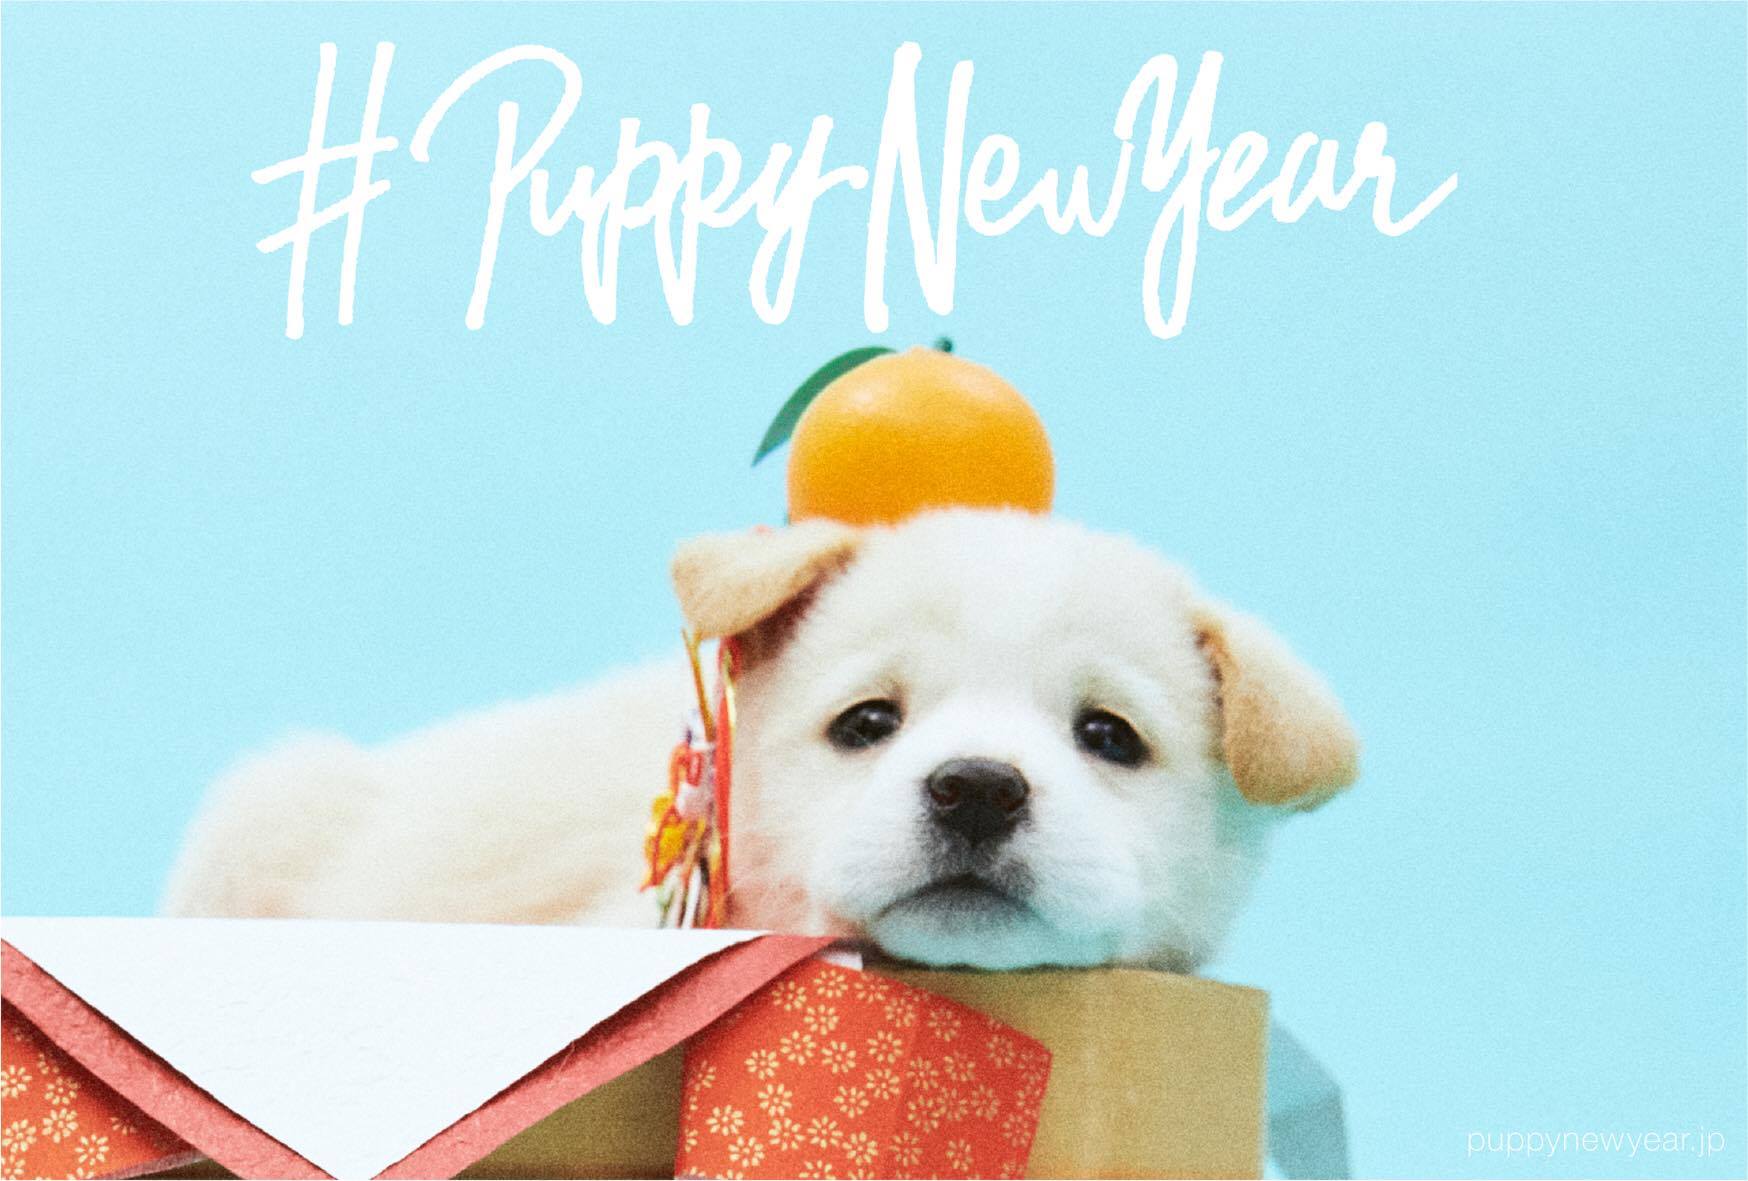 18年は戌年 すべての犬に 幸せな新年を 年賀状で里親を探すプロジェクト Puppy New Year を公開 Npo法人犬 と猫のためのライフボートのプレスリリース